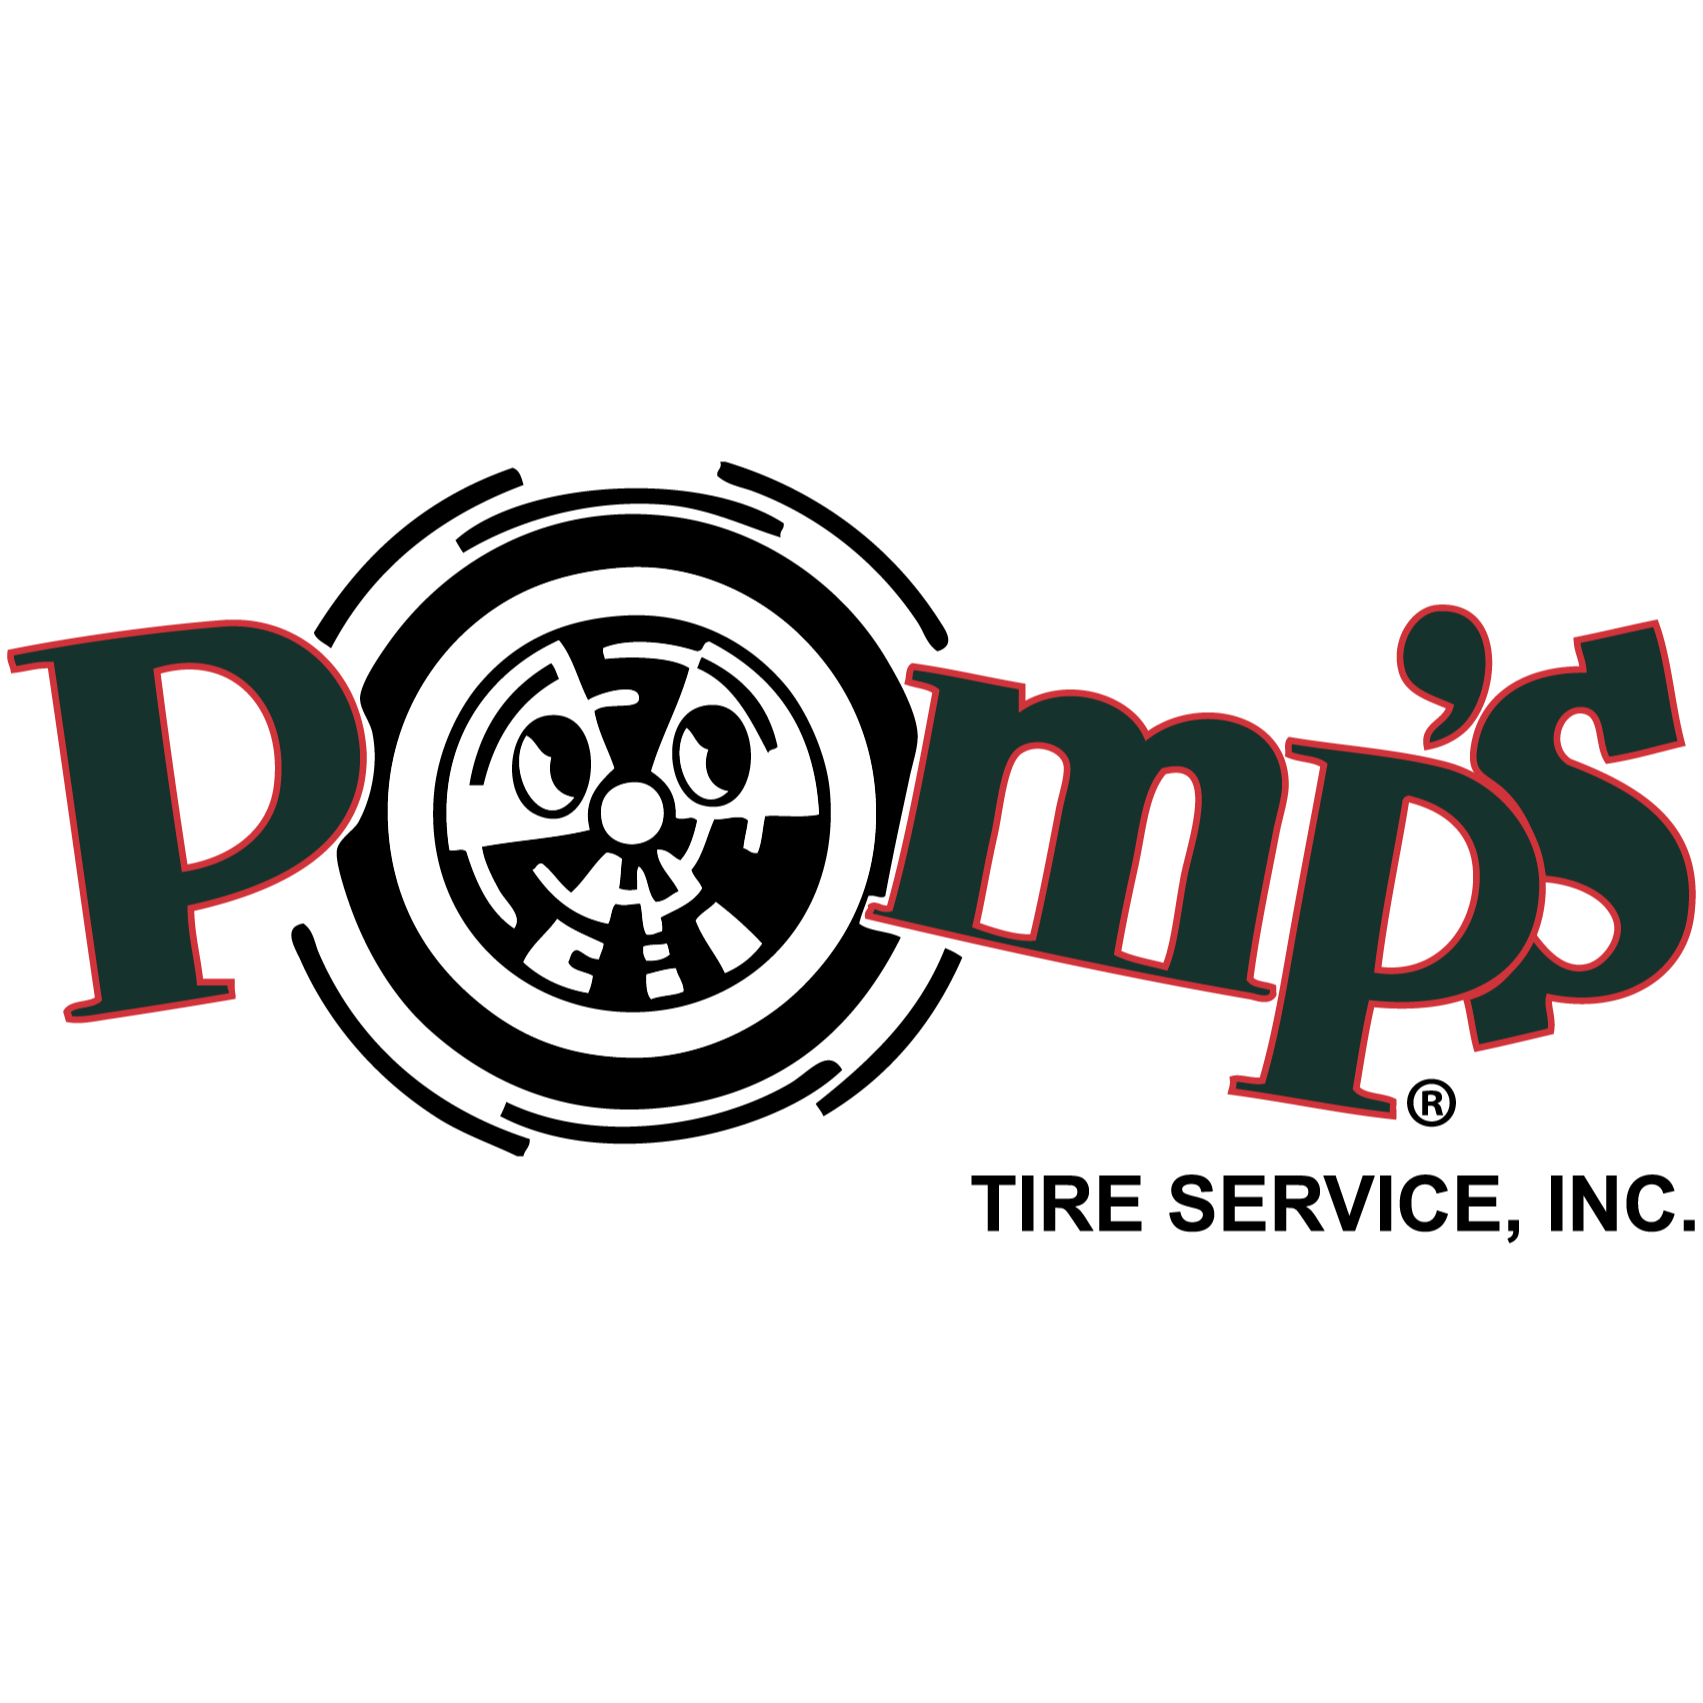 Pomp's Tire Service - Fort Collins, CO 80524 - (970)484-4245 | ShowMeLocal.com